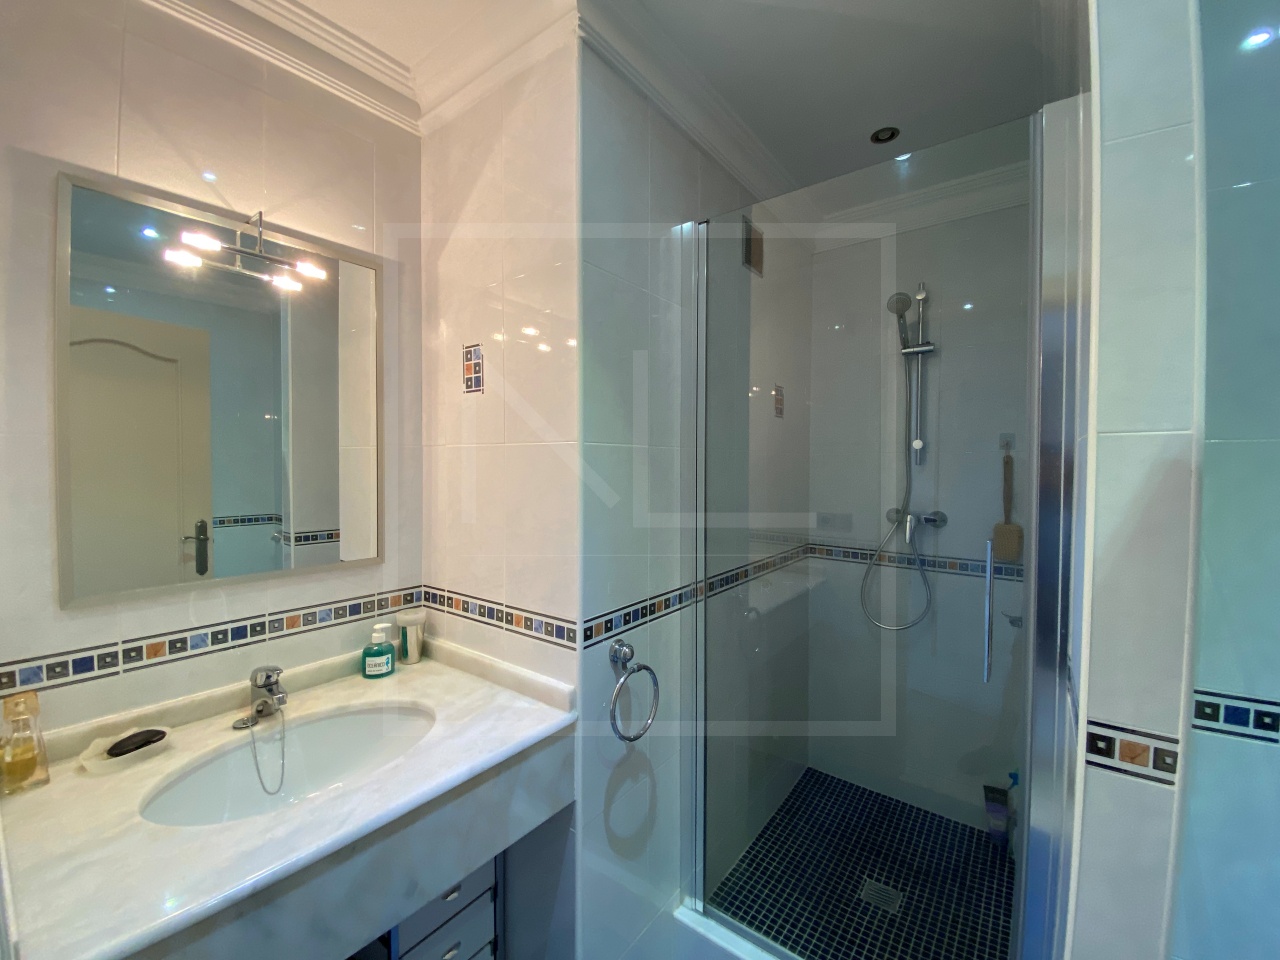 Villa de 4 chambres, 4 salles de bains à vendre à Javea